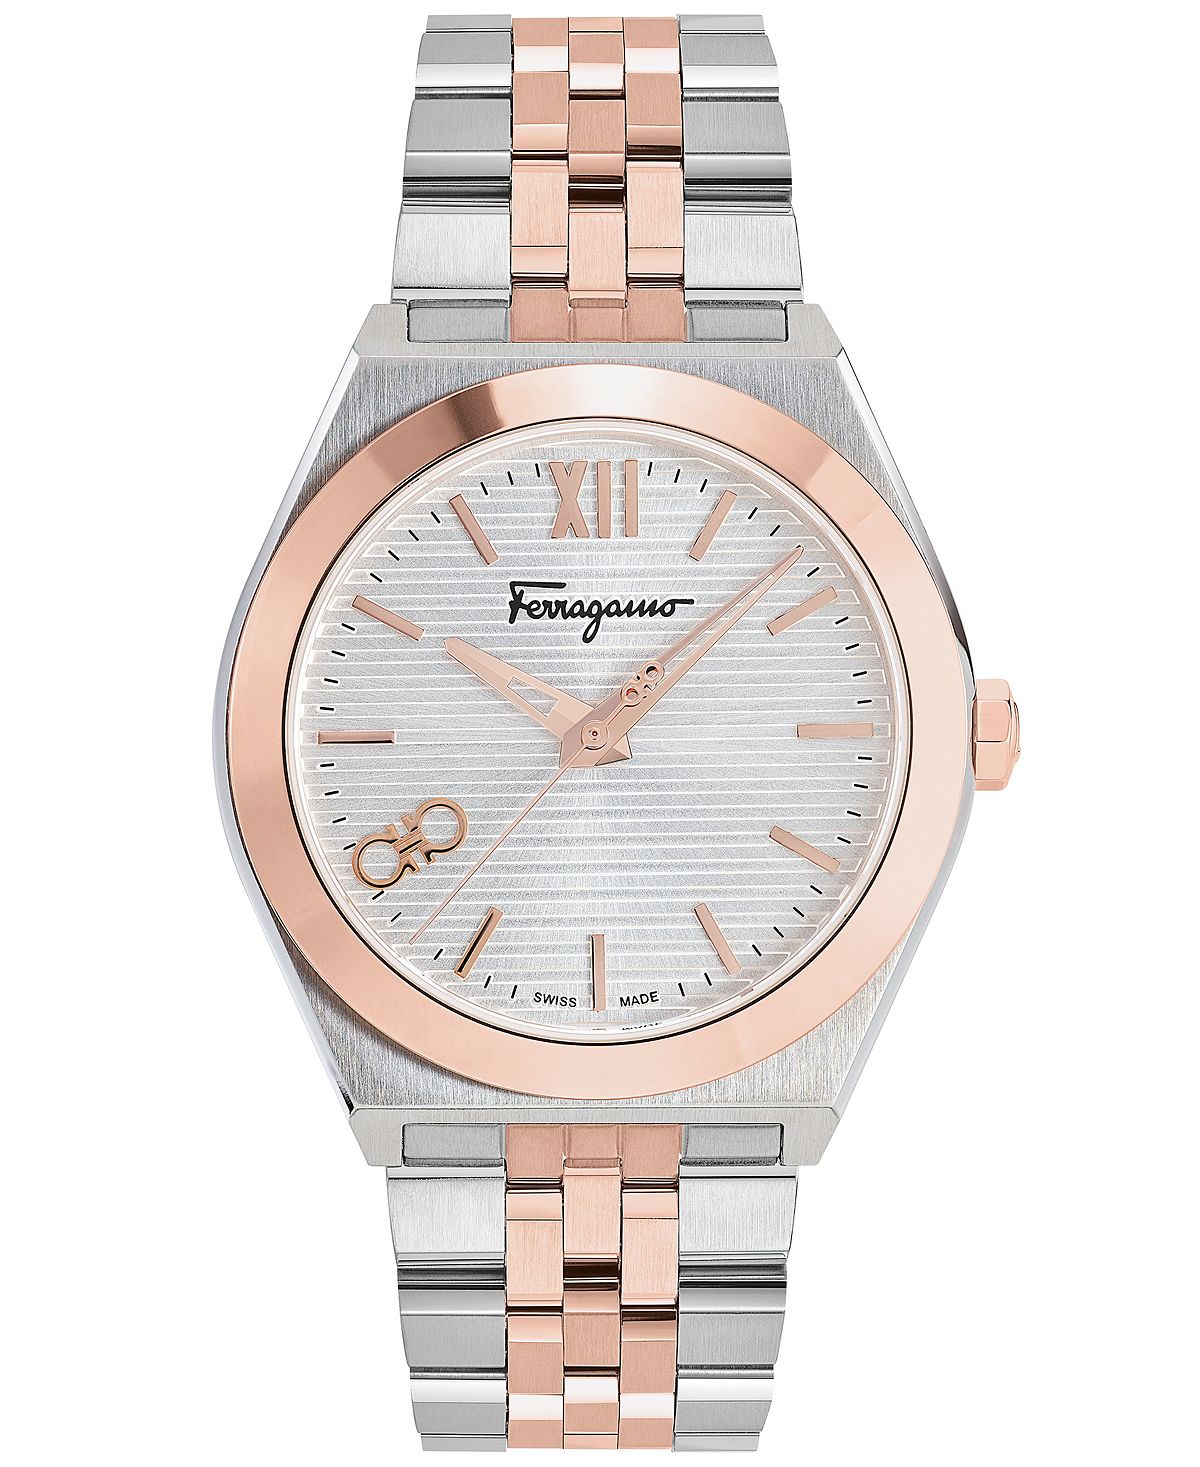 Мужские швейцарские часы Vega с двухцветным браслетом из нержавеющей стали, 40 мм Salvatore Ferragamo мужские швейцарские часы beleganza с двухцветным браслетом из нержавеющей стали 40 мм balmain